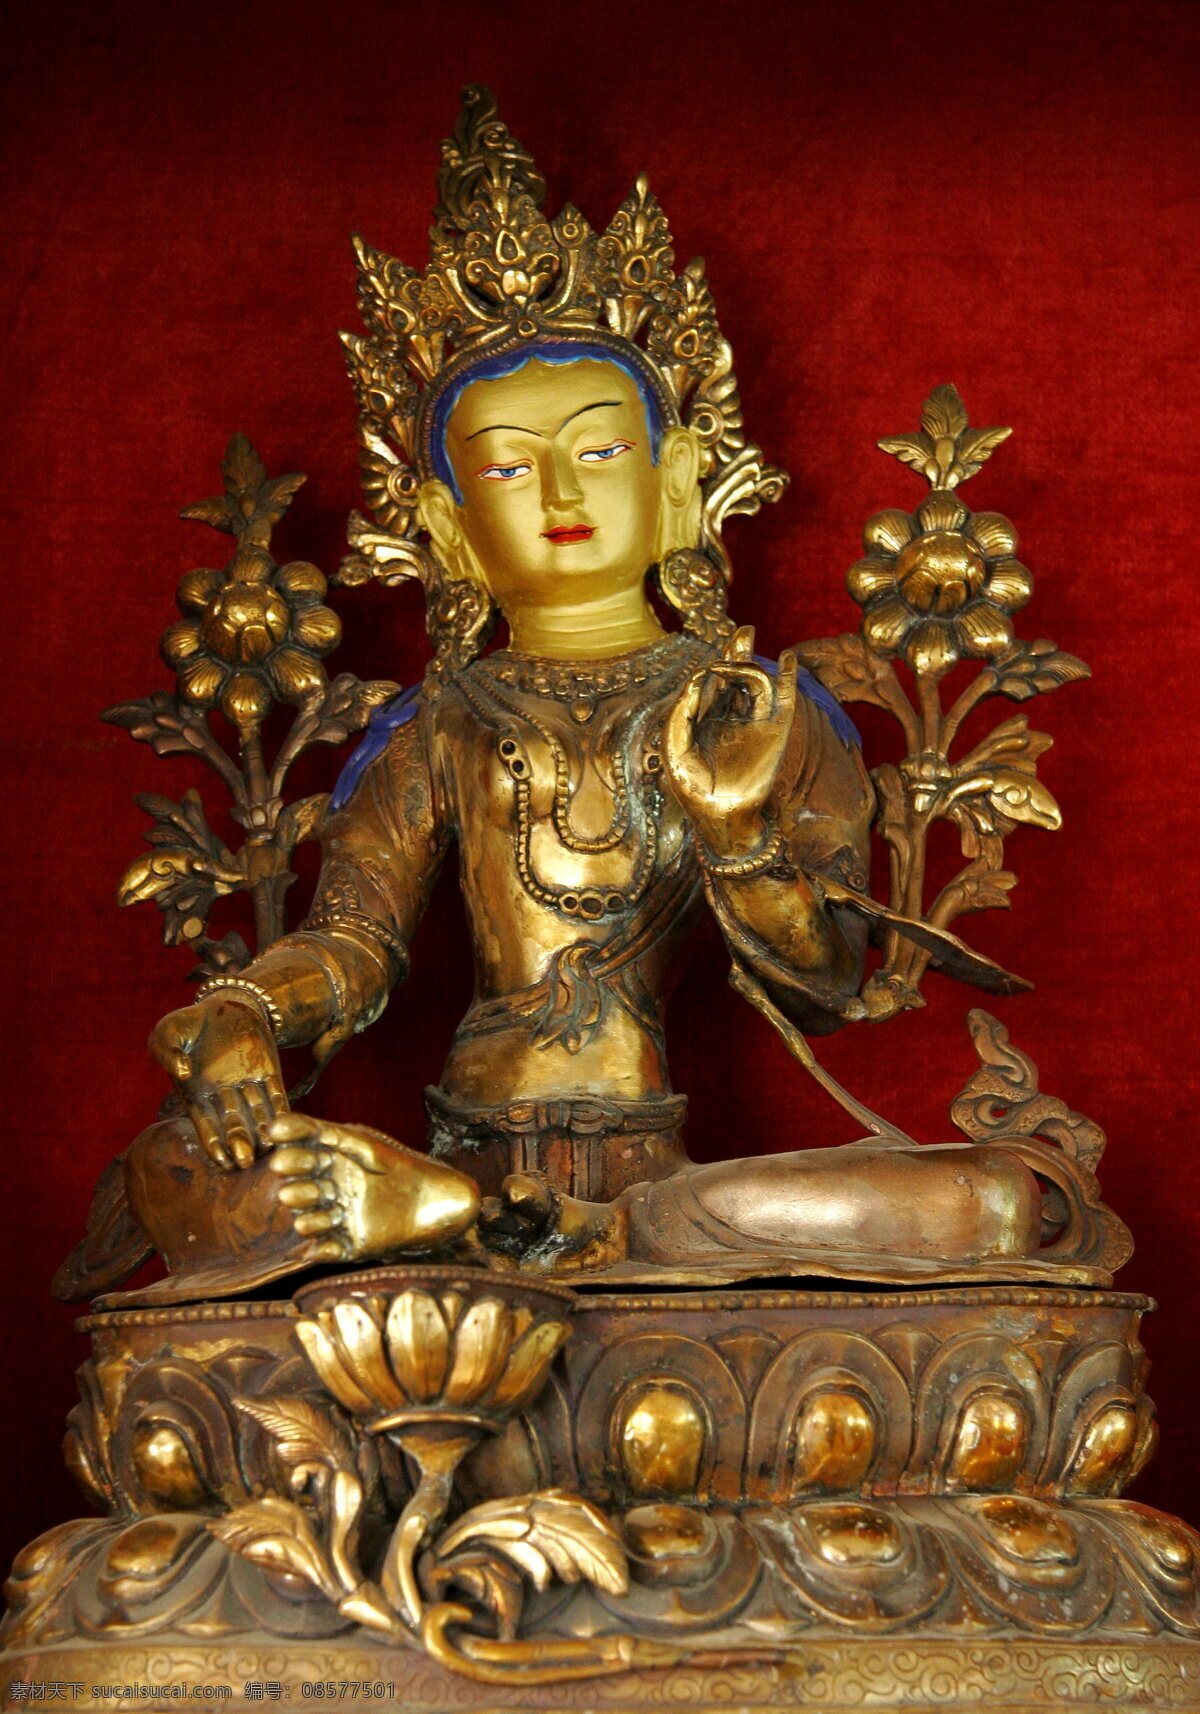 藏族金属铸造 藏族 民族 金属 宗教 工艺品 工艺美术 佛像 铜制品 雕塑 传统 文化 民间工艺 菩萨 民族特色 民间信仰 宗教信仰 文化艺术